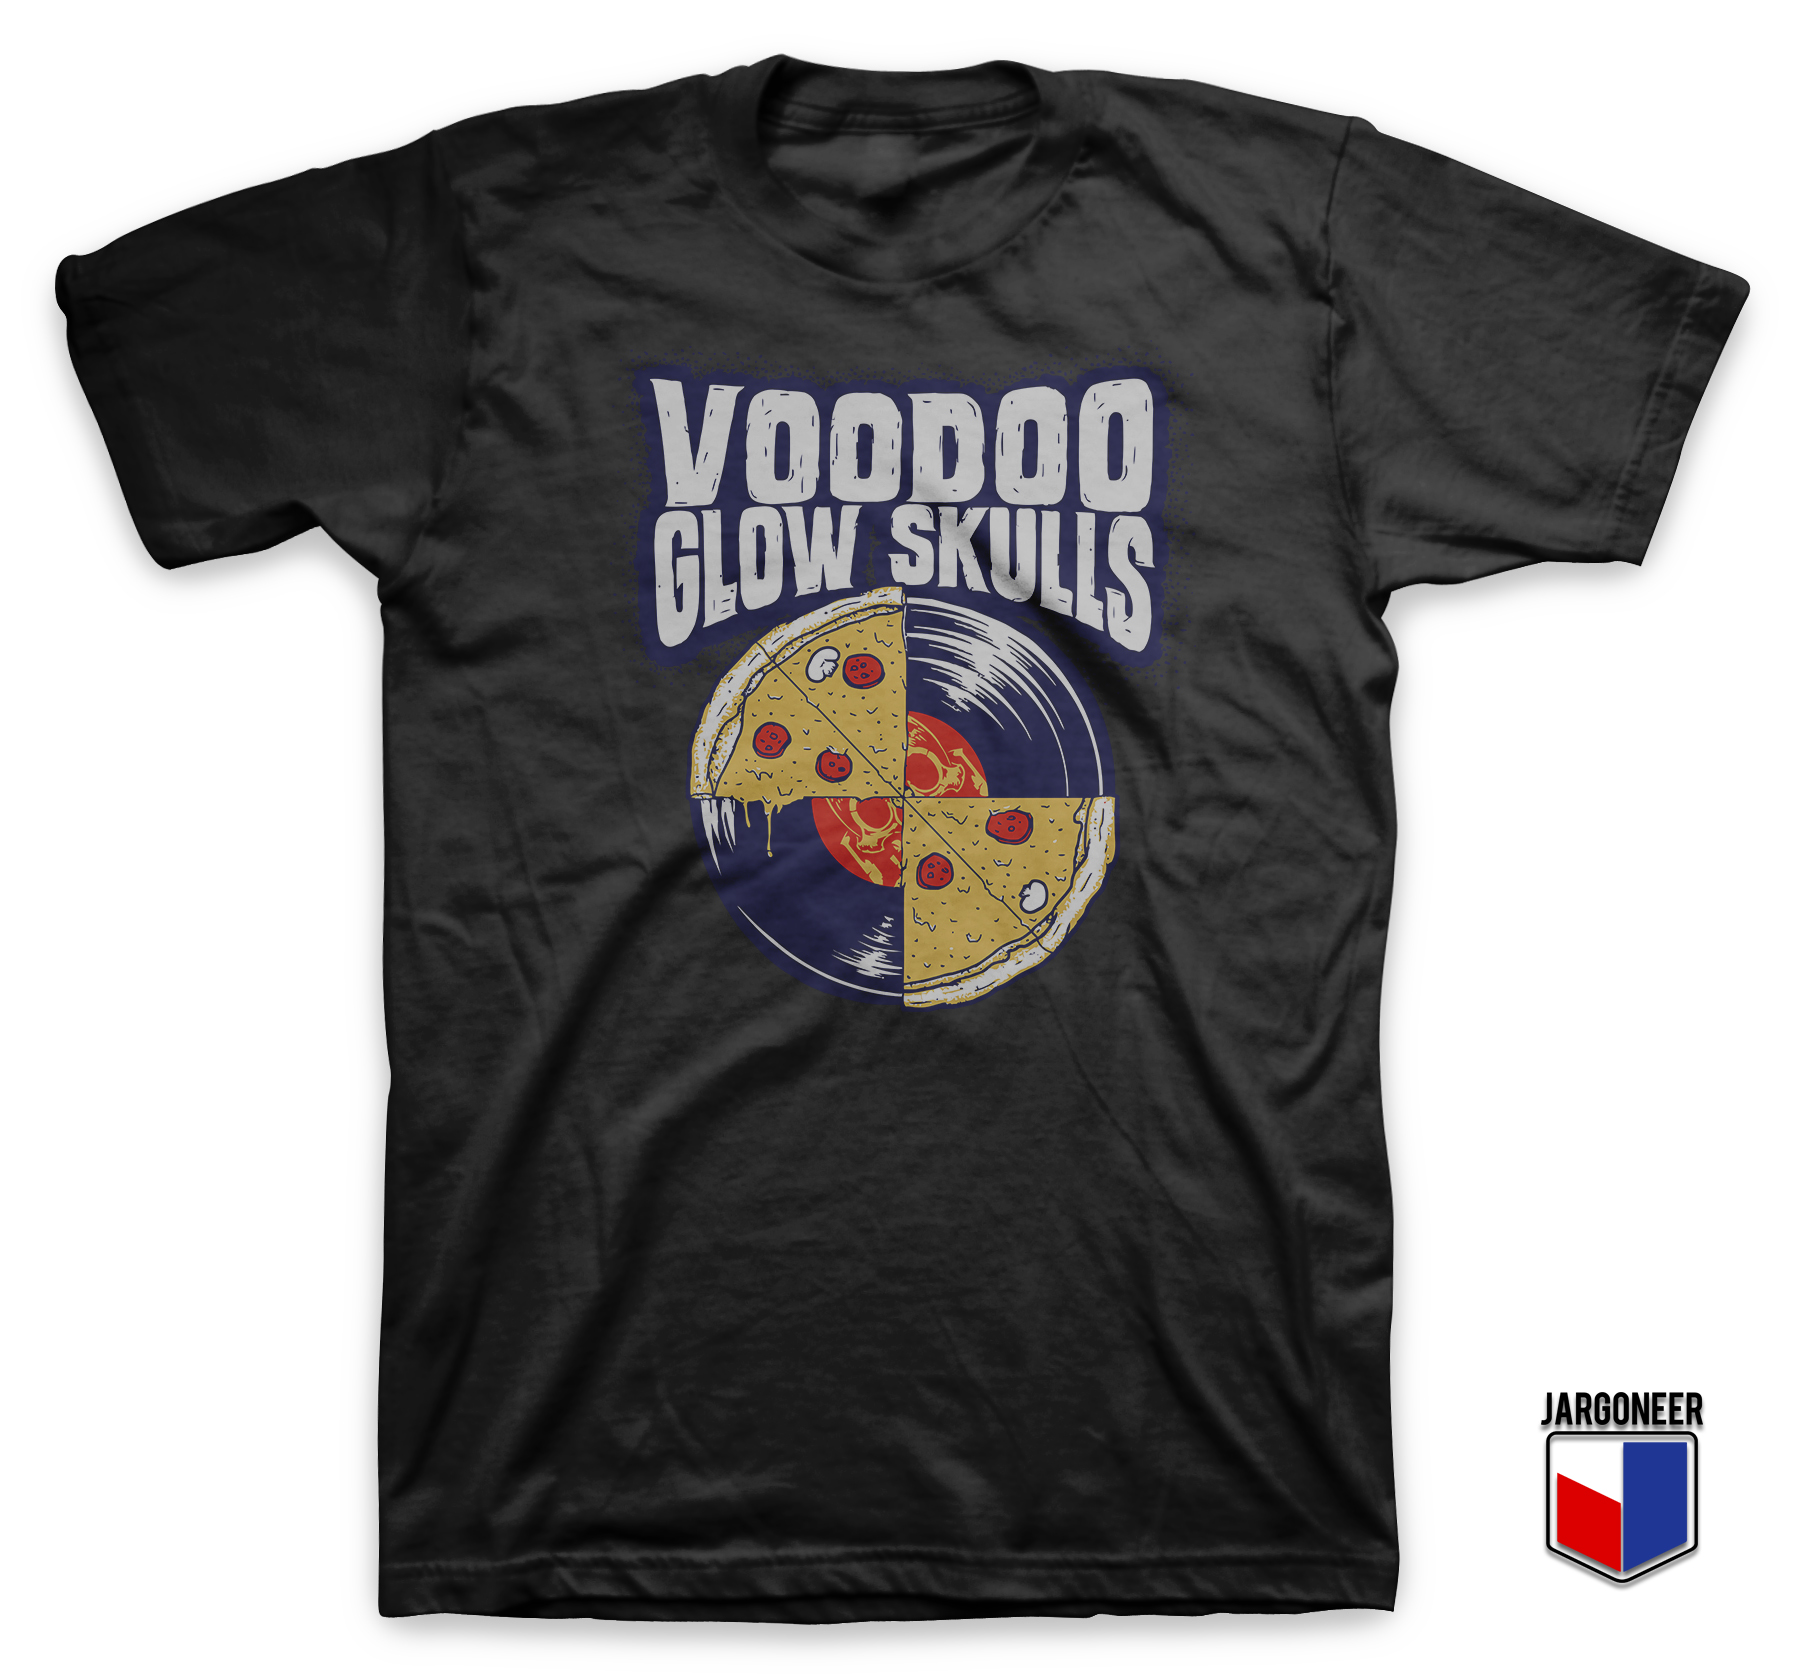 Voodoo Glow Skulls Vinyl Pizza Black T Shirt - Shop Unique Graphic Cool Shirt Designs